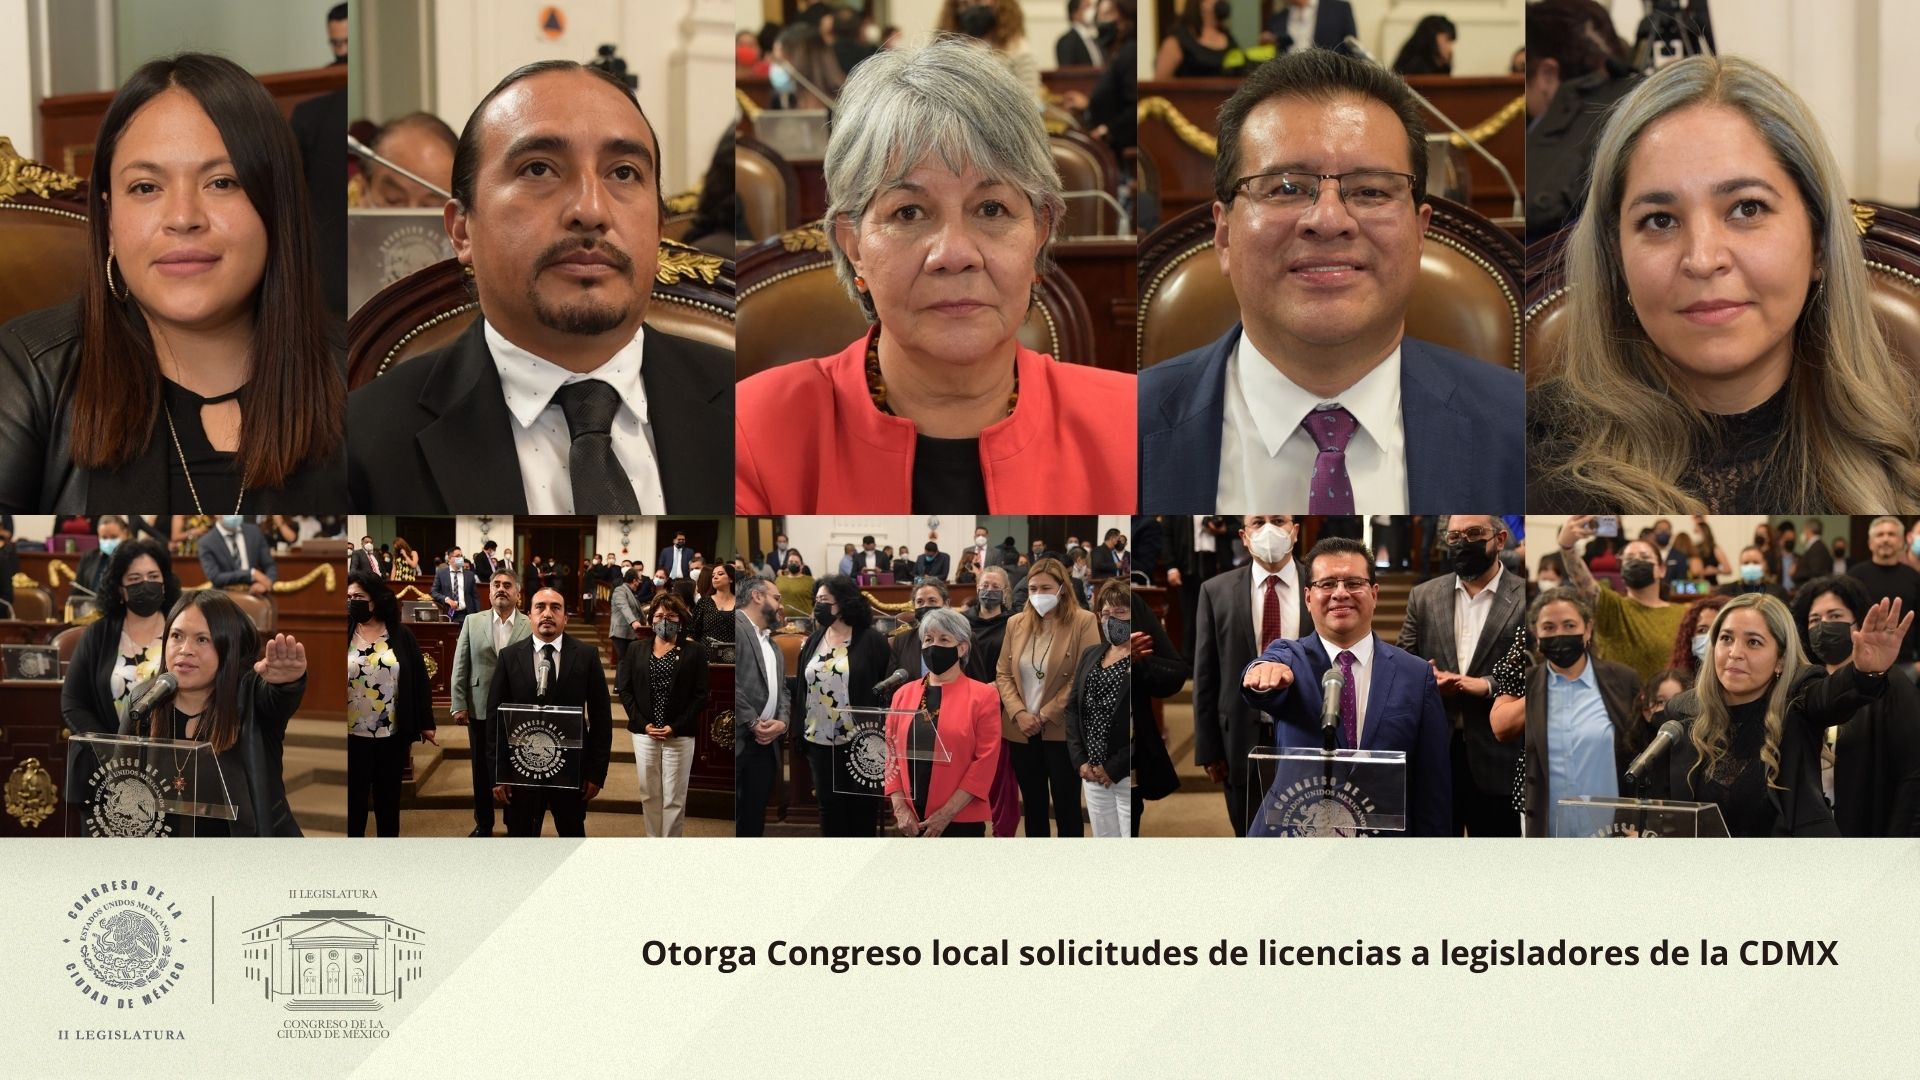 Otorga Congreso local solicitudes de licencias a legisladores de la CDMX